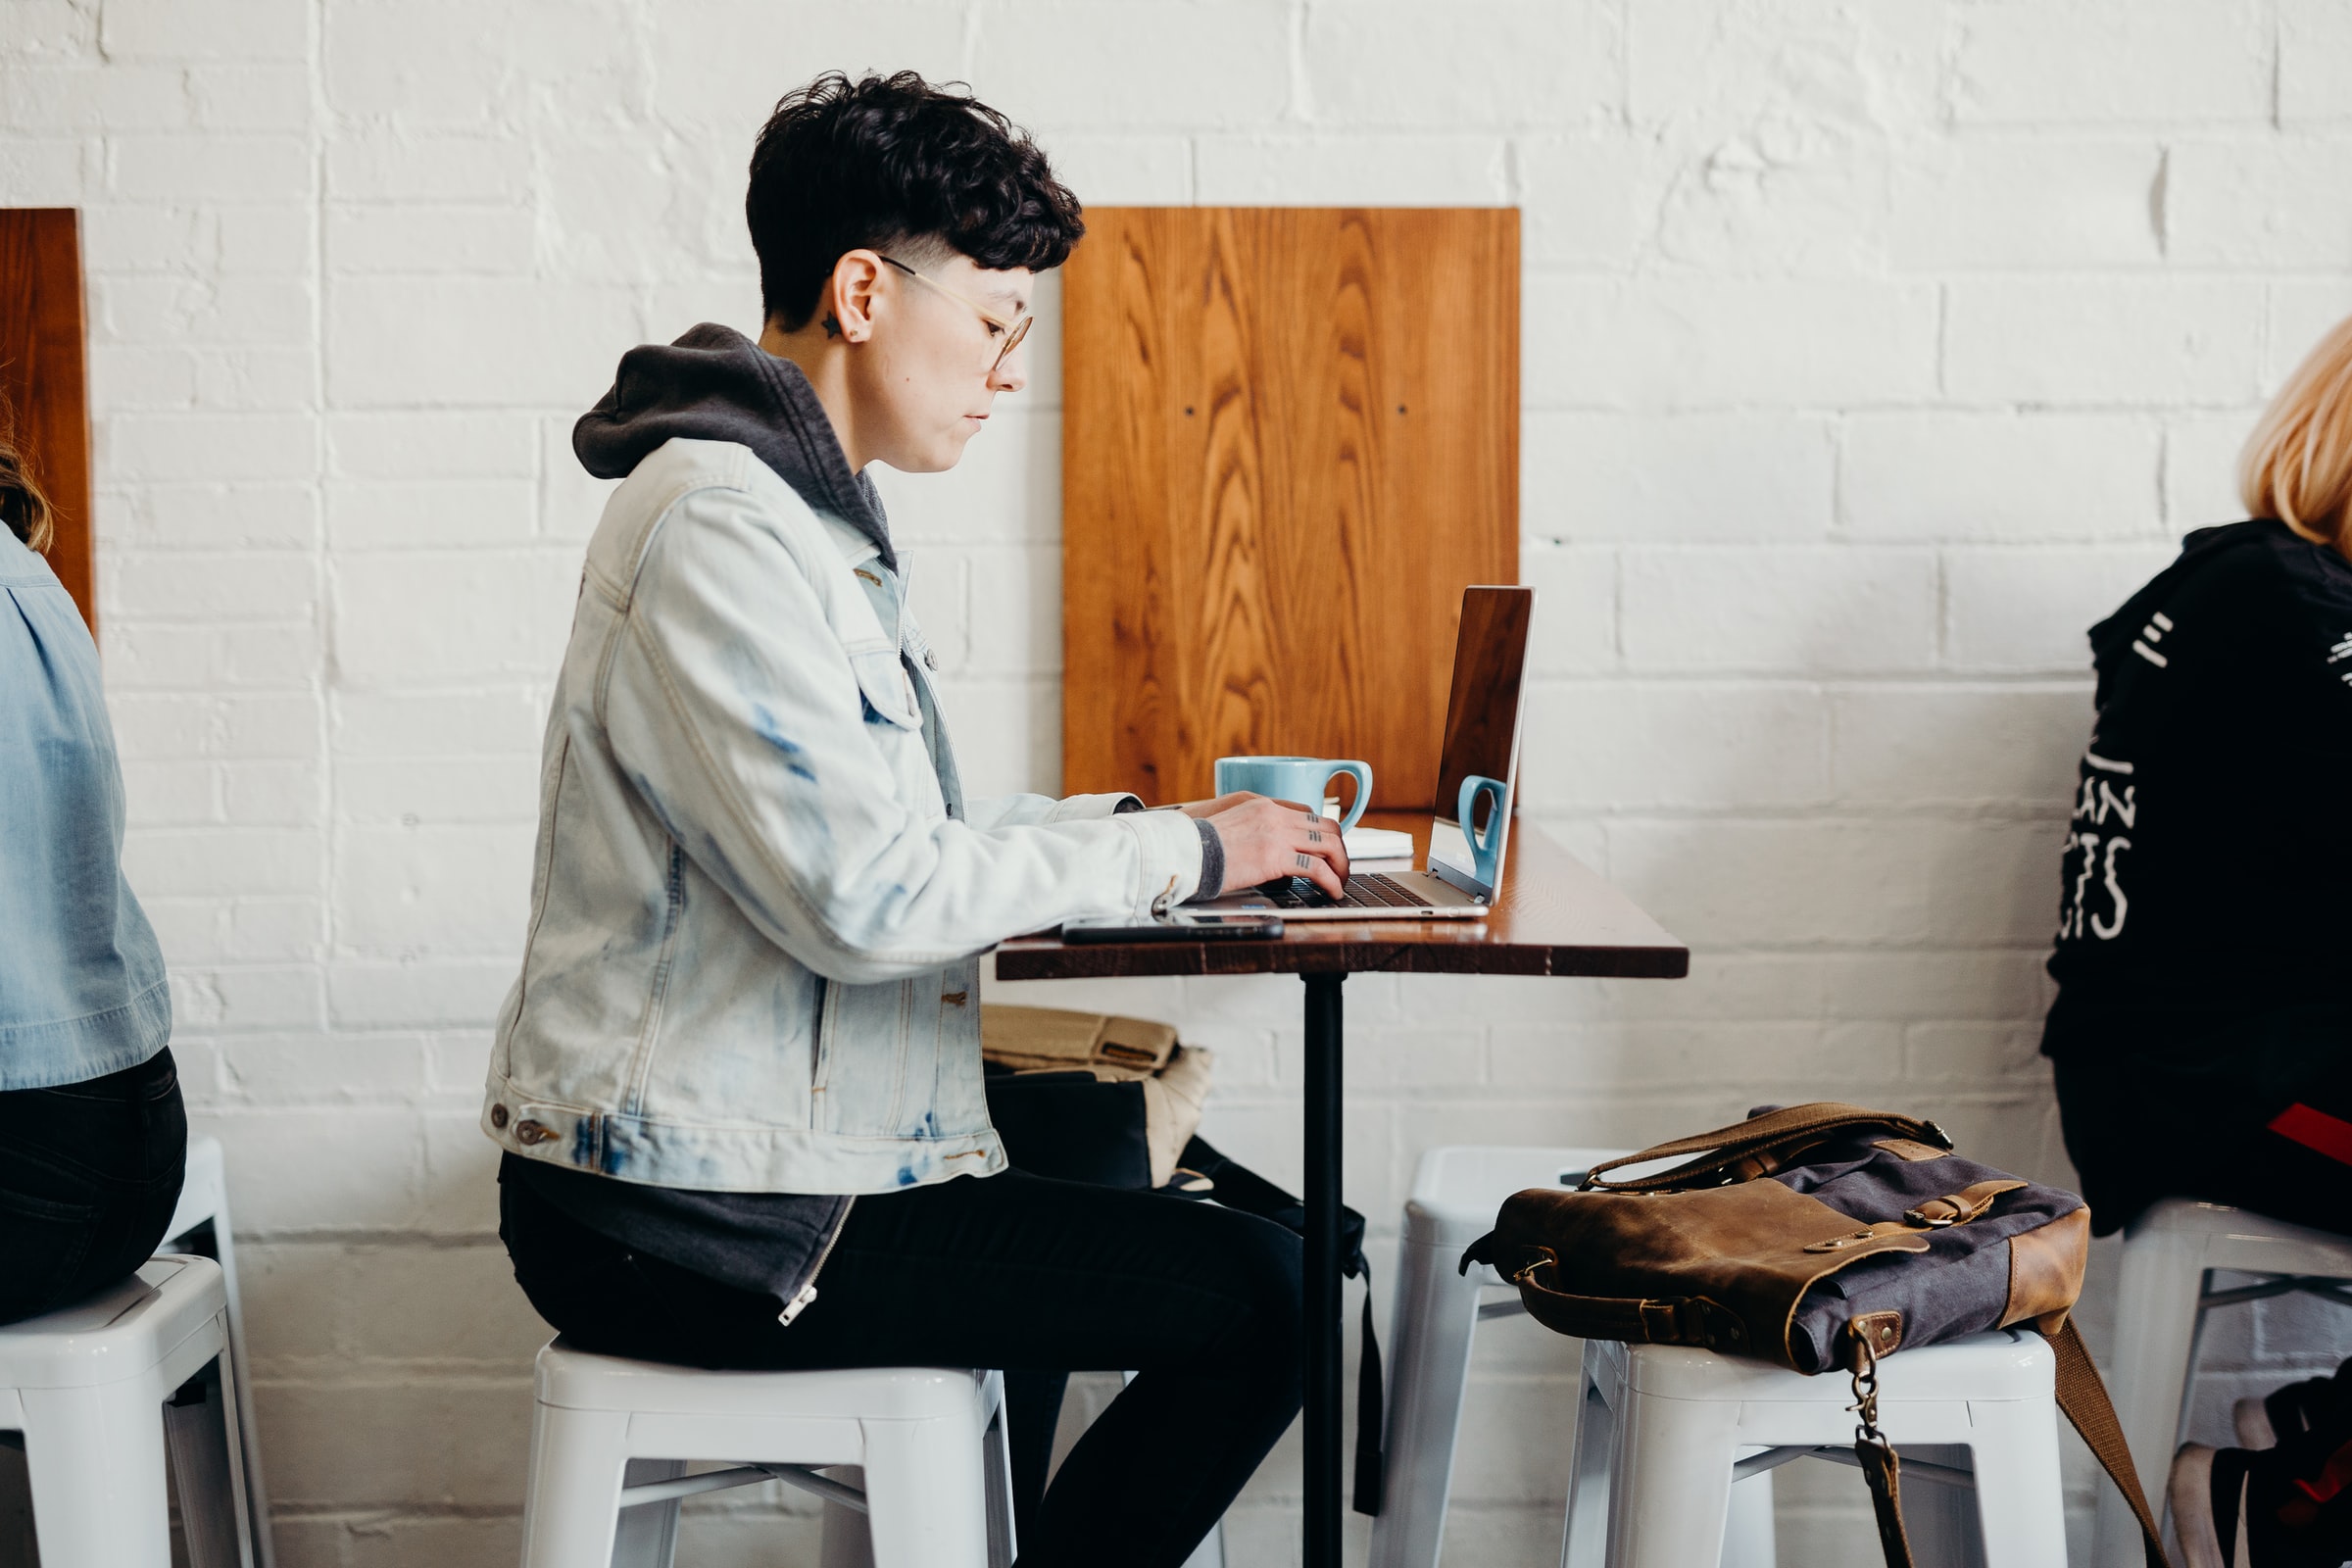 Vemos uma mulher trabalhando em um café. Sobre a mesa vemos uma caneca e seu computador (imagem ilustrativa).